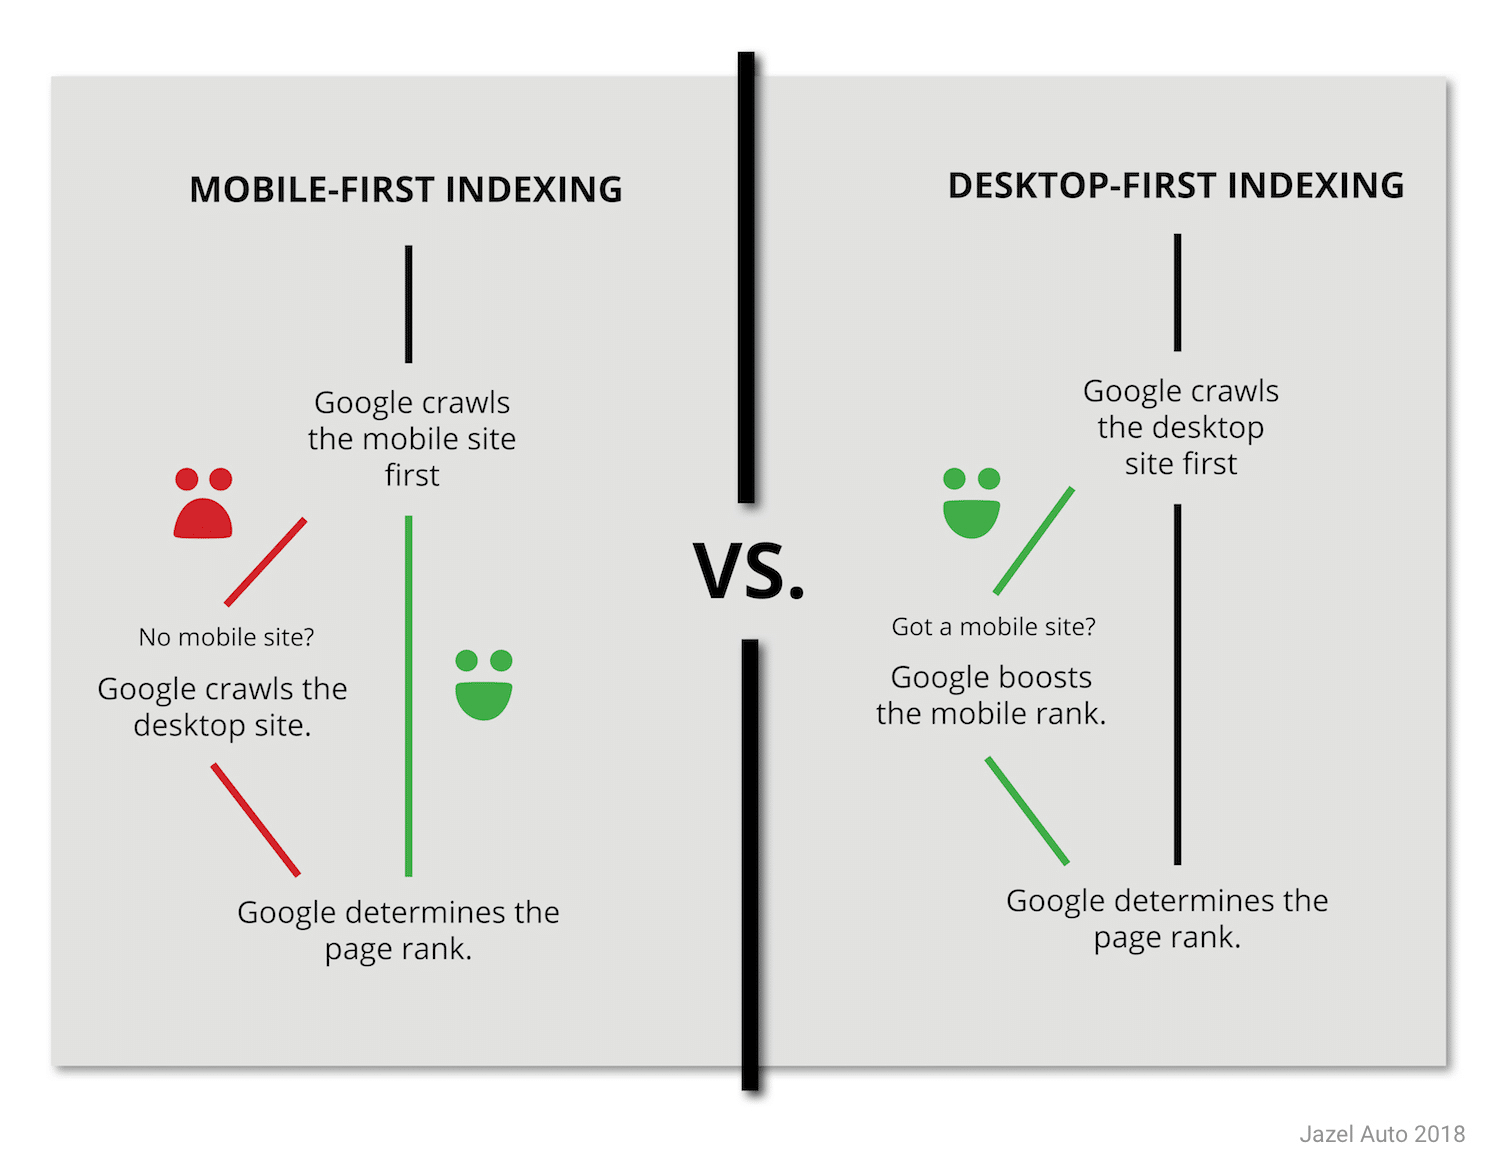 Illustrazione che confronta il funzionamento dell'indicizzazione mobile-first con la desktop-first. 